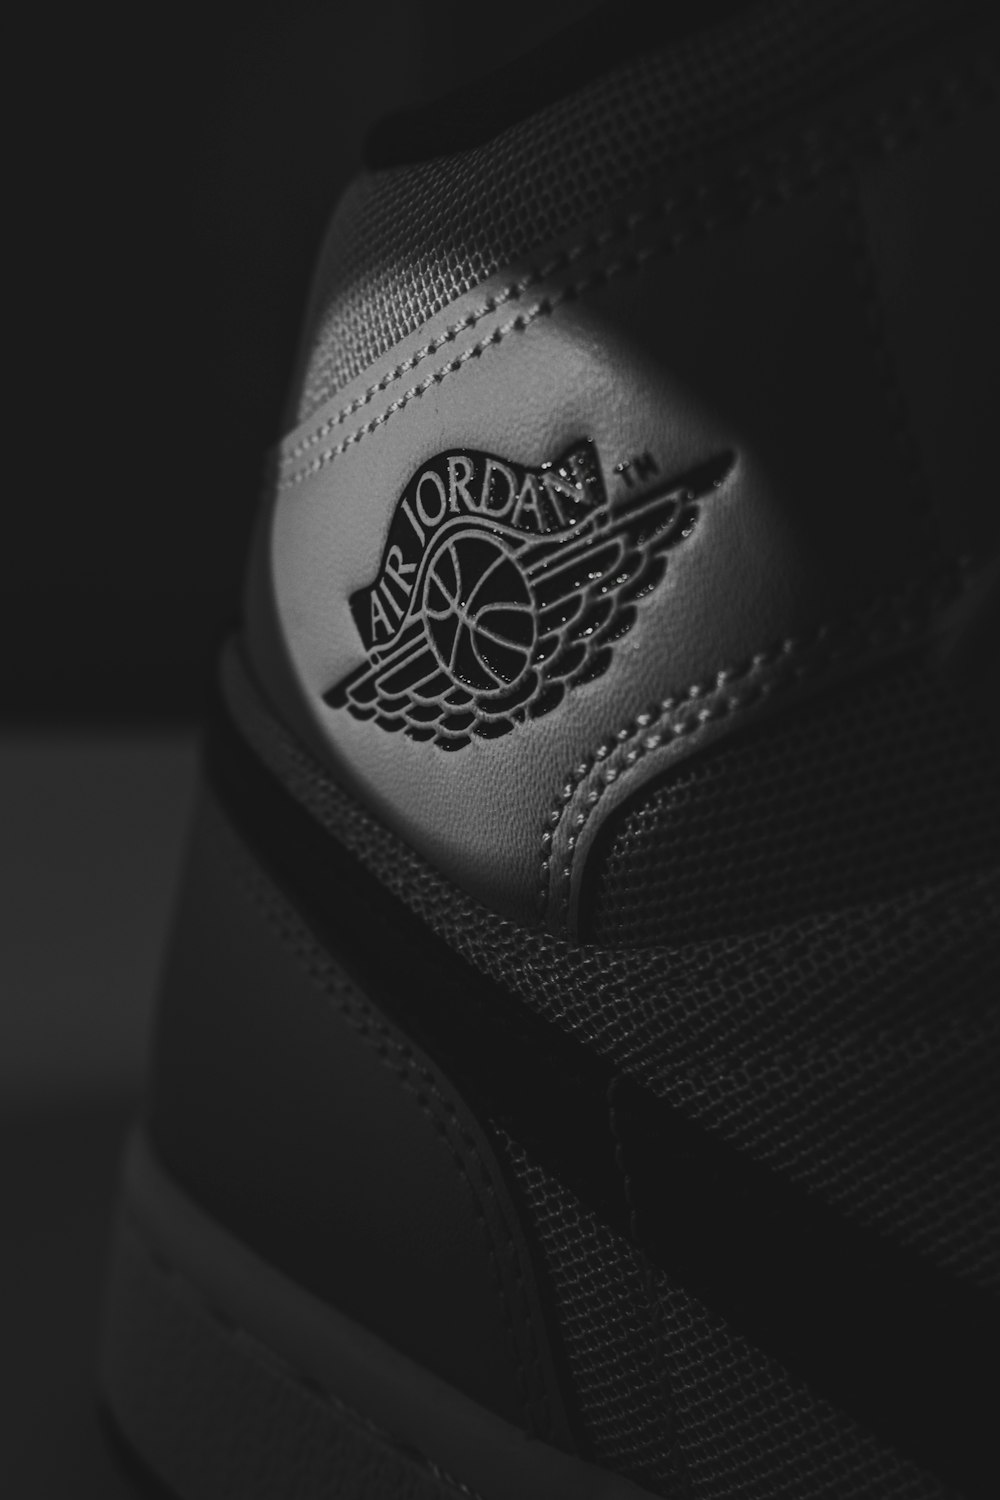 Imágenes de Nike Jordan Wallpaper | Descarga imágenes gratuitas en Unsplash